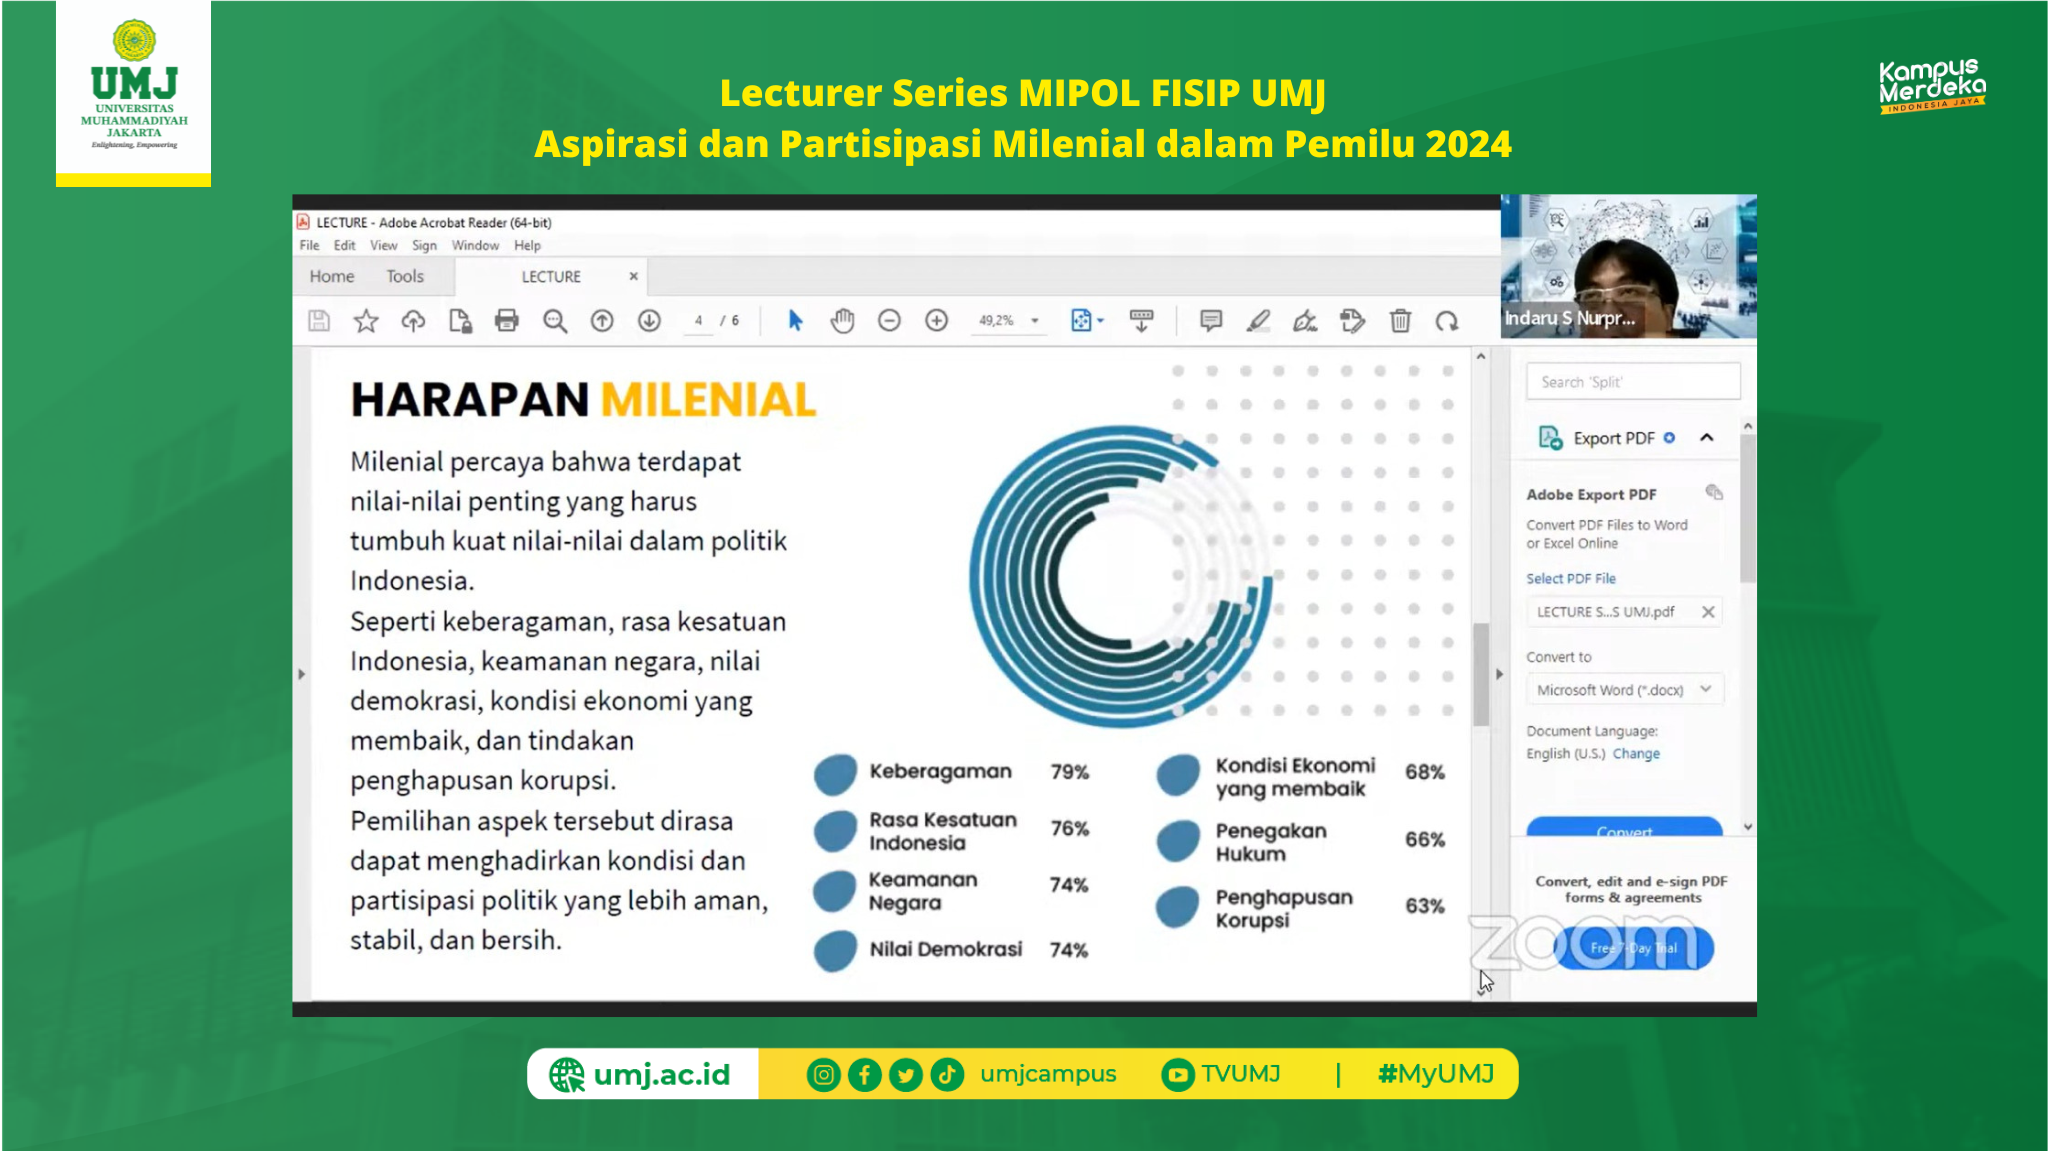 Lecturer Series MIPOL FISIP UMJ Aspirasi dan Partisipasi Milenial dalam Pemilu 2024